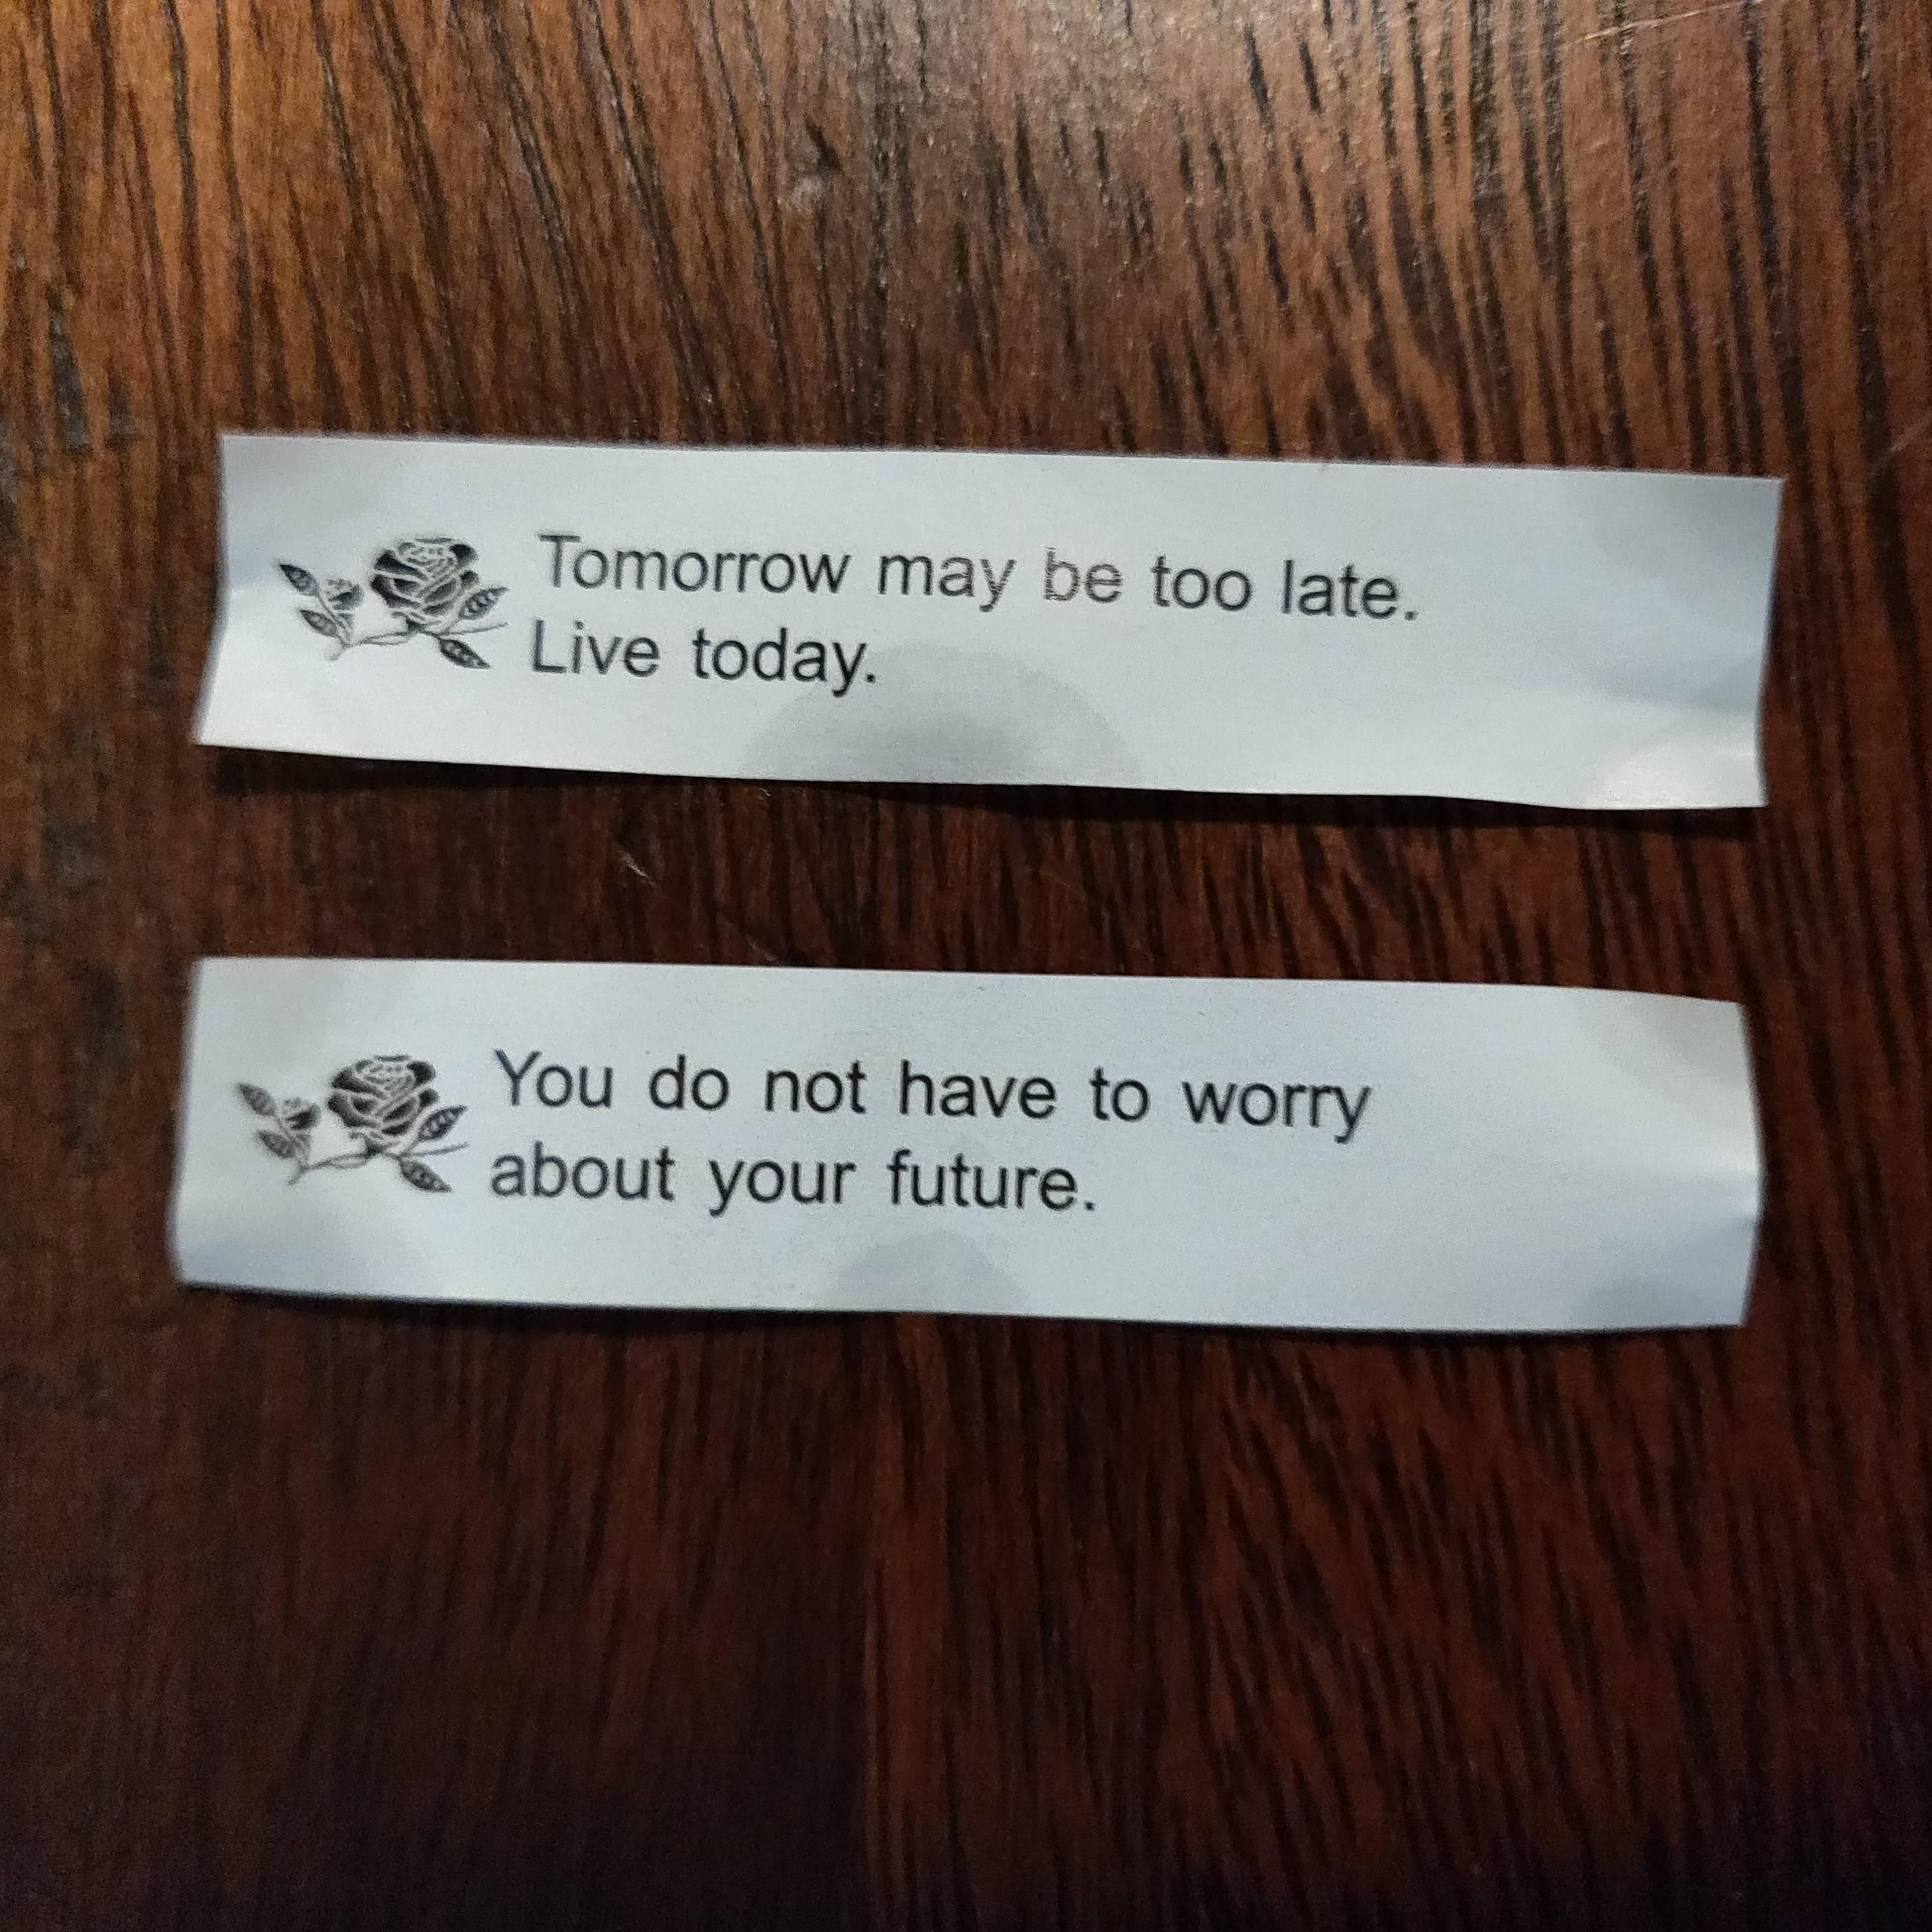 My fortune cookies tonight were a little dark